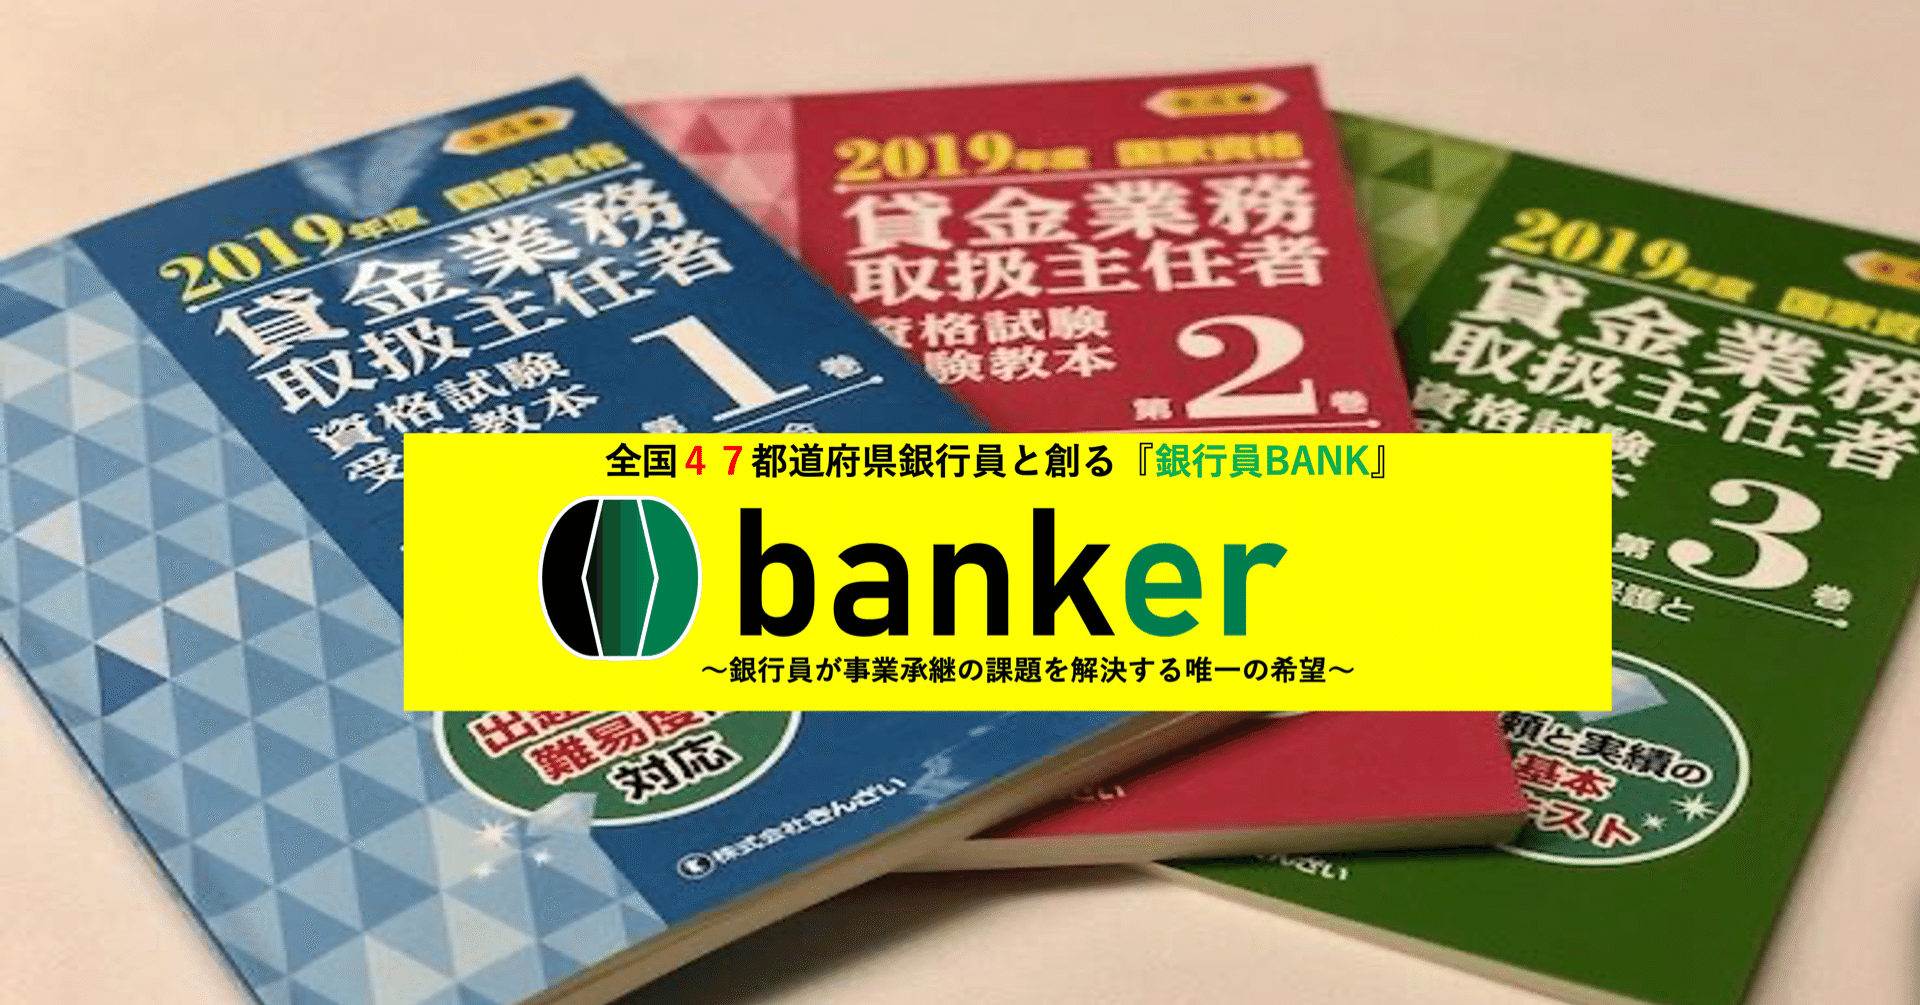 番外編 貸金業務取扱主任者試験 銀行マニア 公式 Note